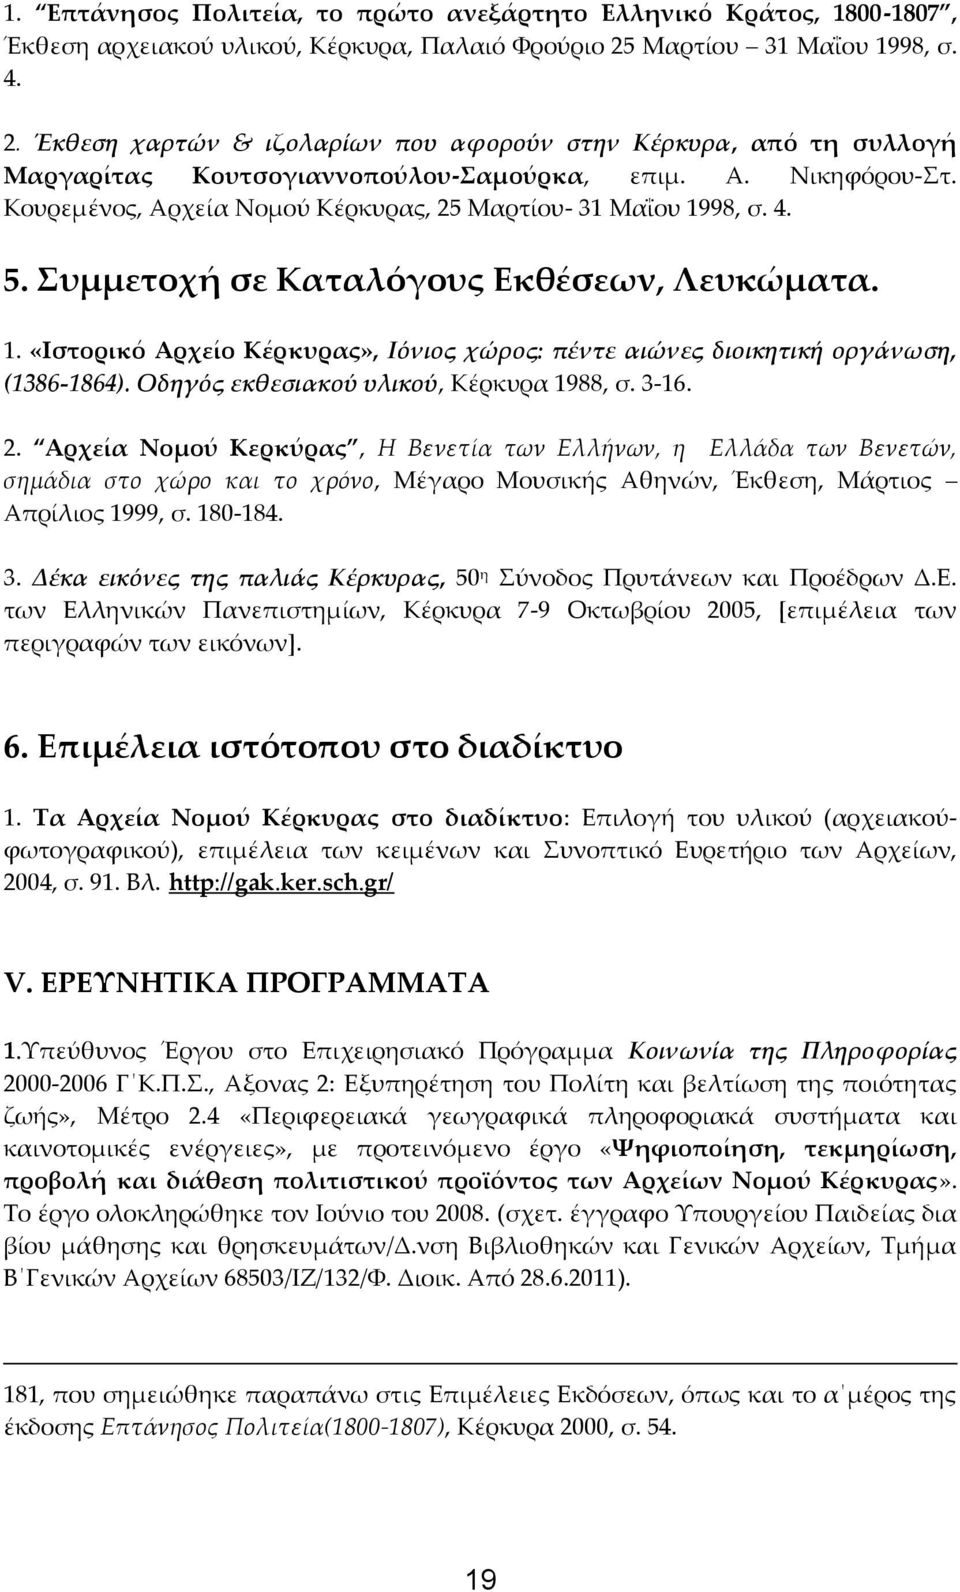 Κουρεμένος, Αρχεία Νομού Κέρκυρας, 25 Μαρτίου- 31 Μαΐου 1998, σ. 4. 5. Συμμετοχή σε Καταλόγους Εκθέσεων, Λευκώματα. 1. «Ιστορικό Αρχείο Κέρκυρας», Ιόνιος χώρος: πέντε αιώνες διοικητική οργάνωση, (1386-1864).